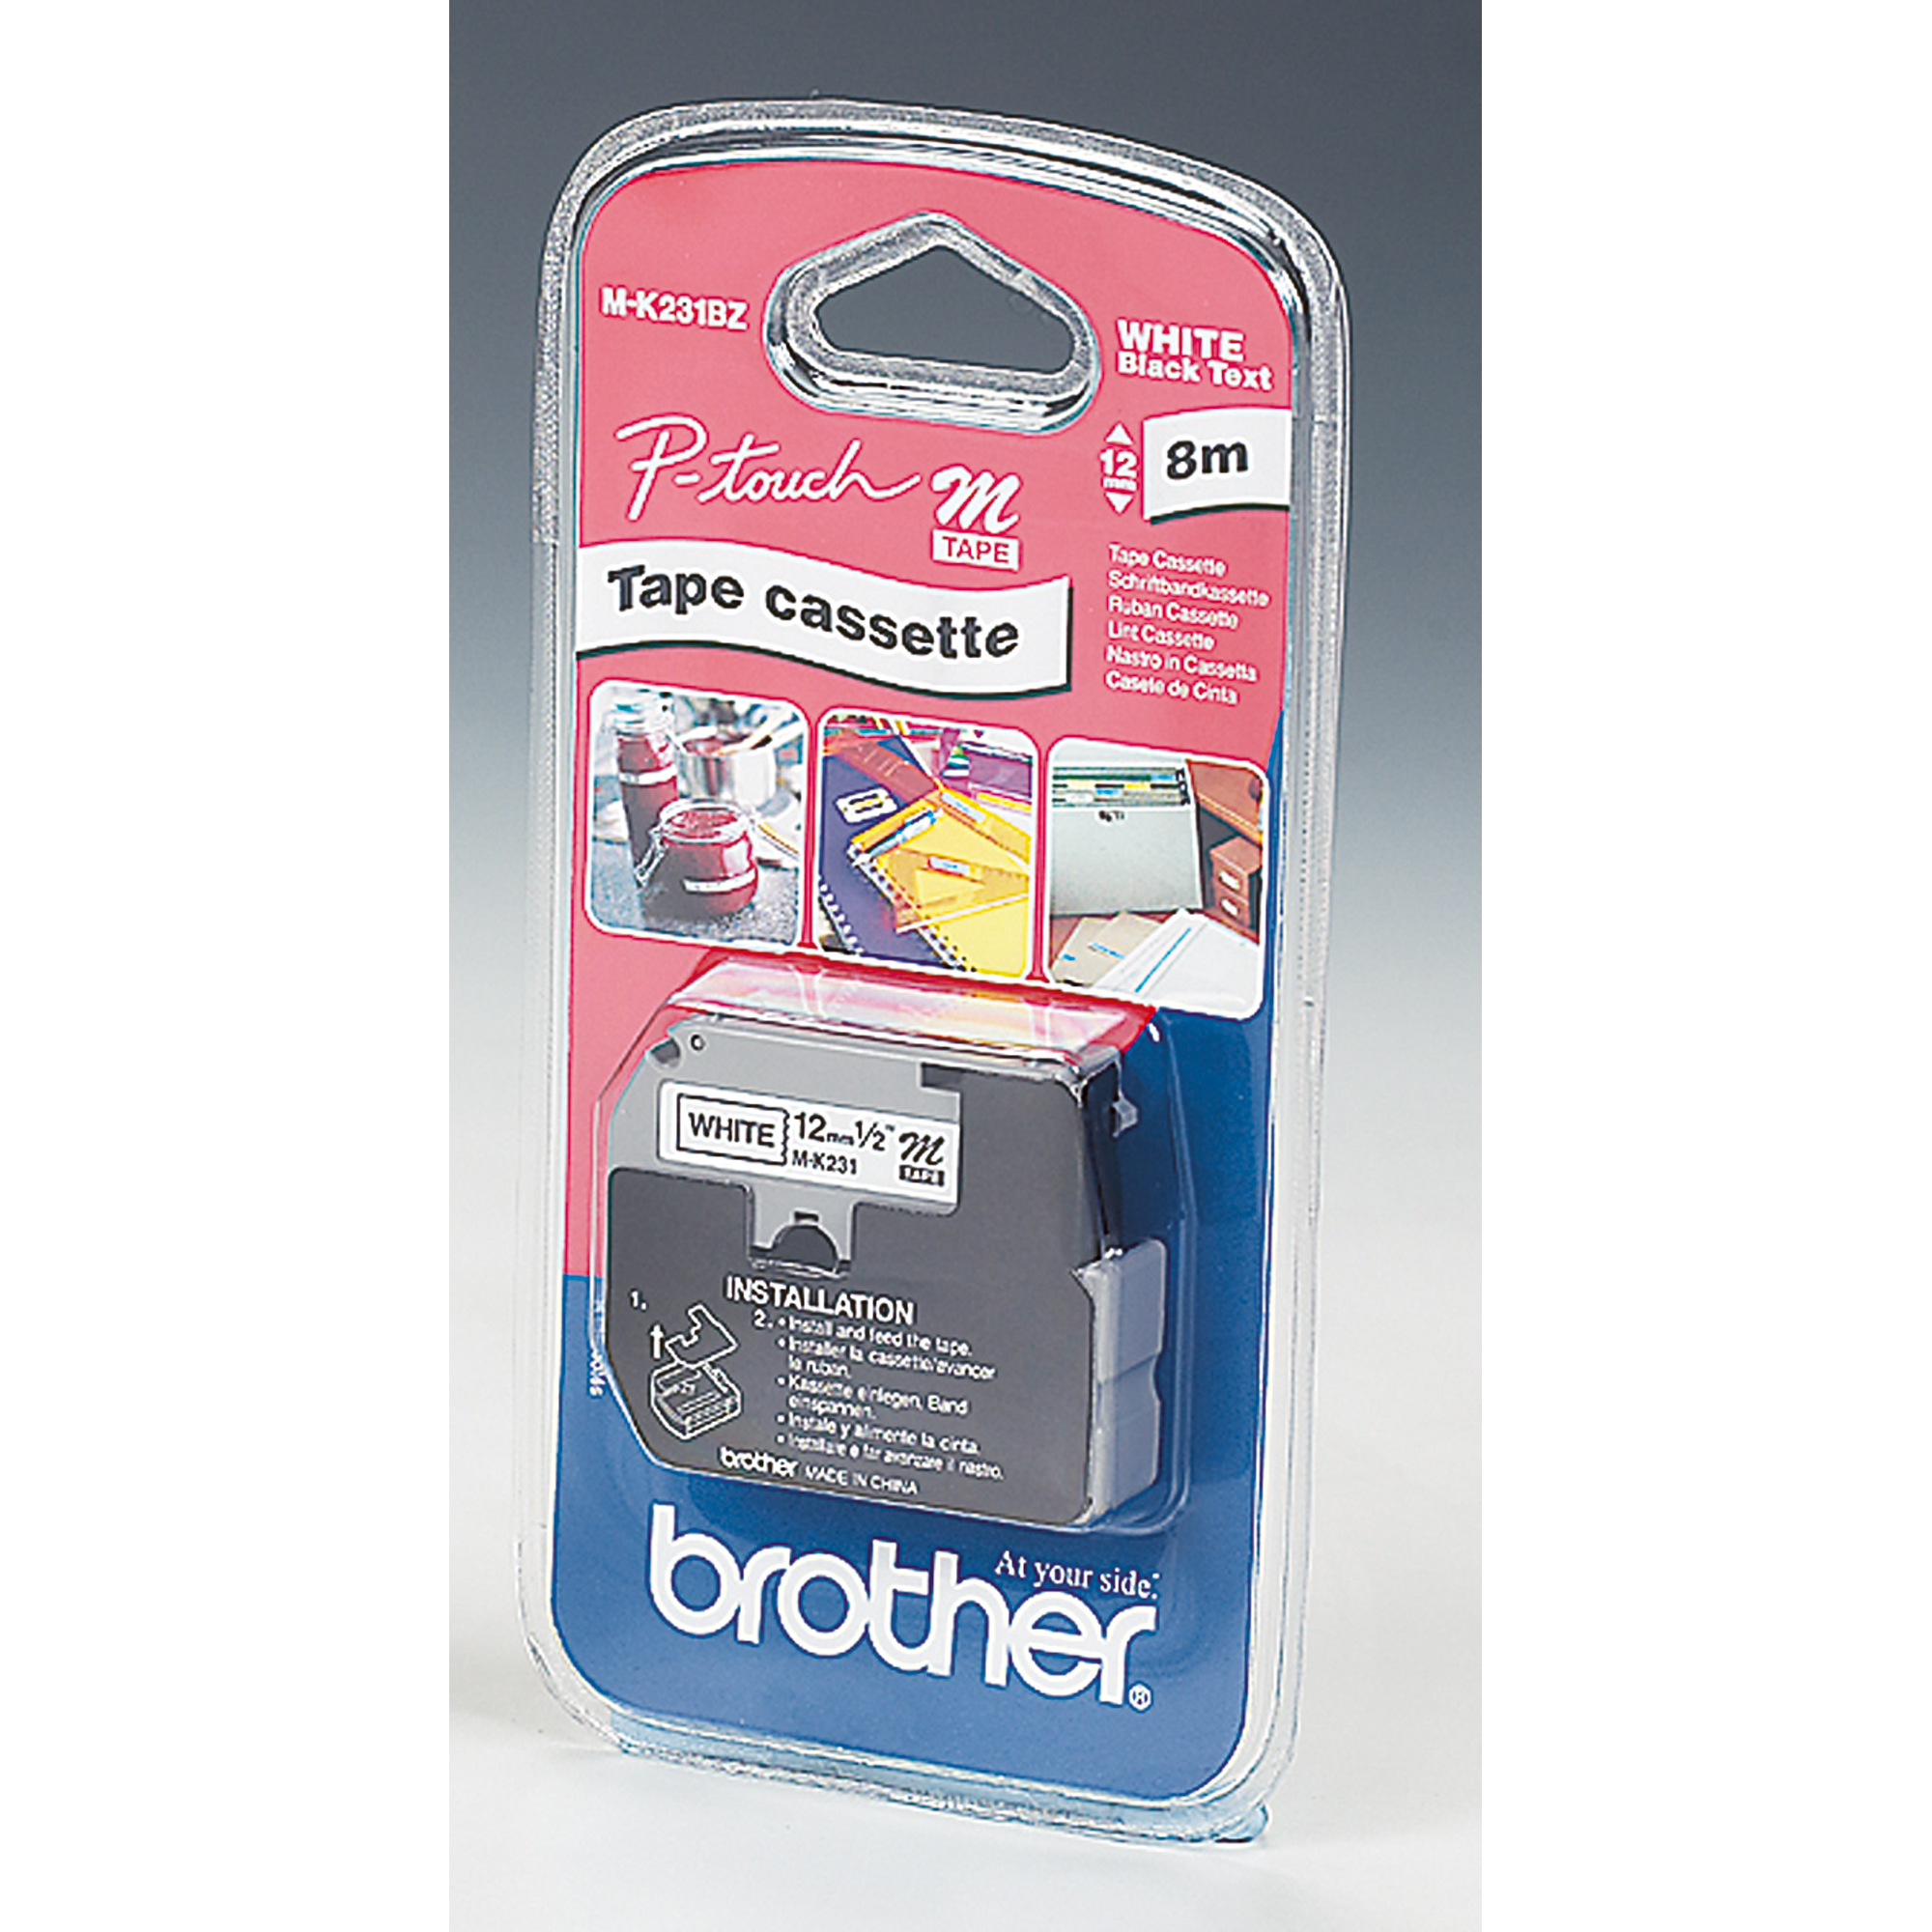 BROTHER Tape Cassette weiß Schriftbandkassette auf schwarz MK231BZ